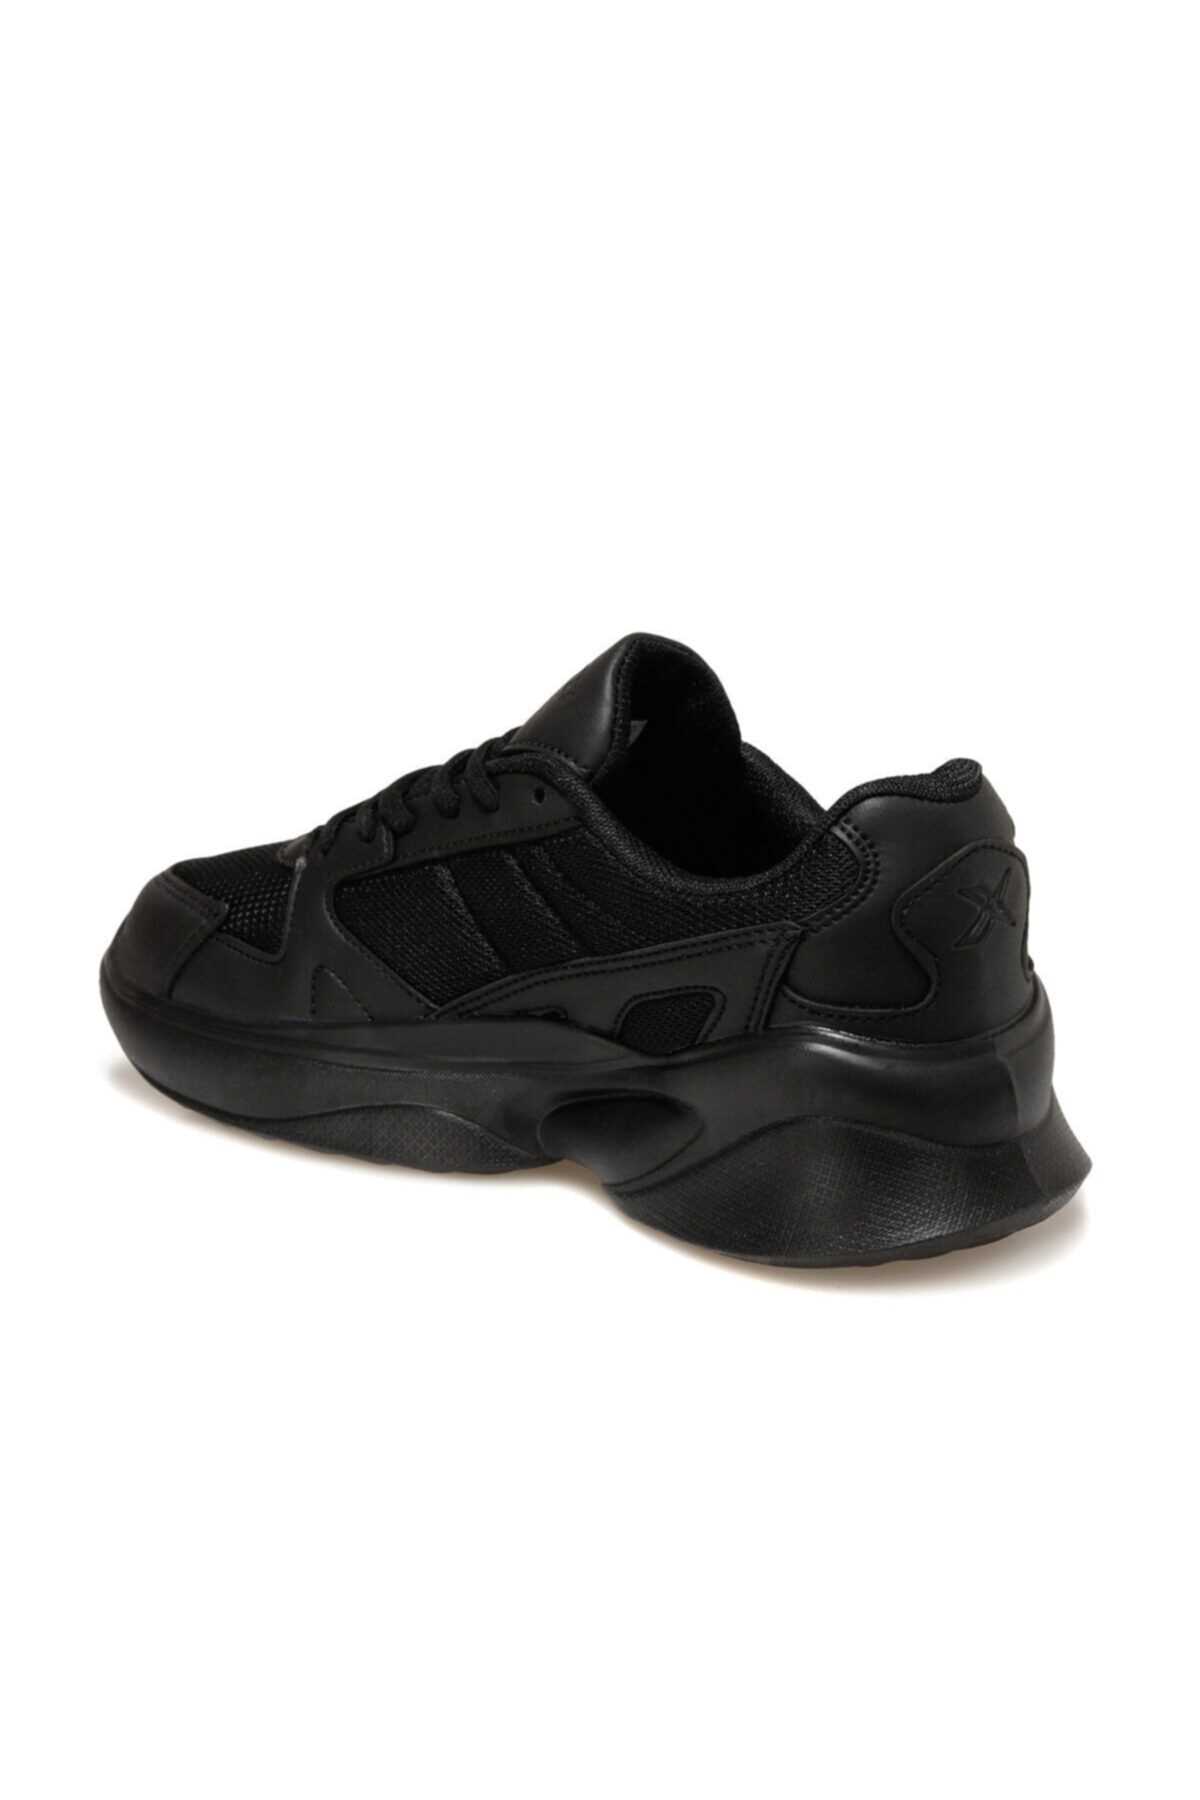 فروش انلاین کفش مخصوص پیاده روی زنانه مجلسی برند کینتیکس kinetix رنگ مشکی کد ty63057767